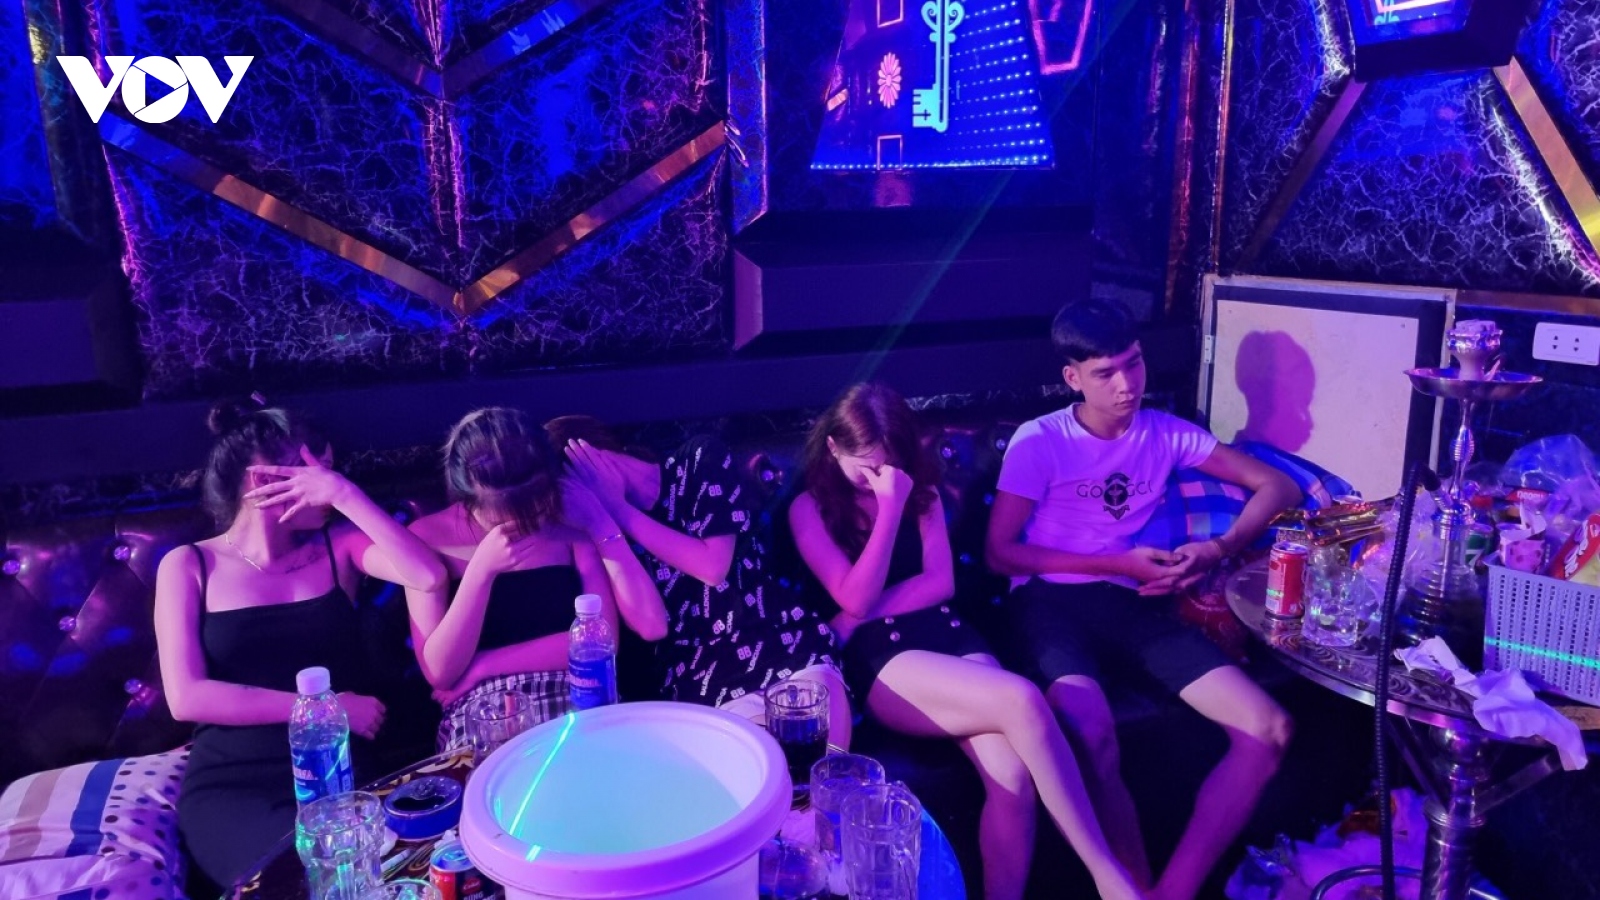 Bắt quả tang 33 thanh niên sử dụng ma tuý trong phòng karaoke tại Bắc Ninh